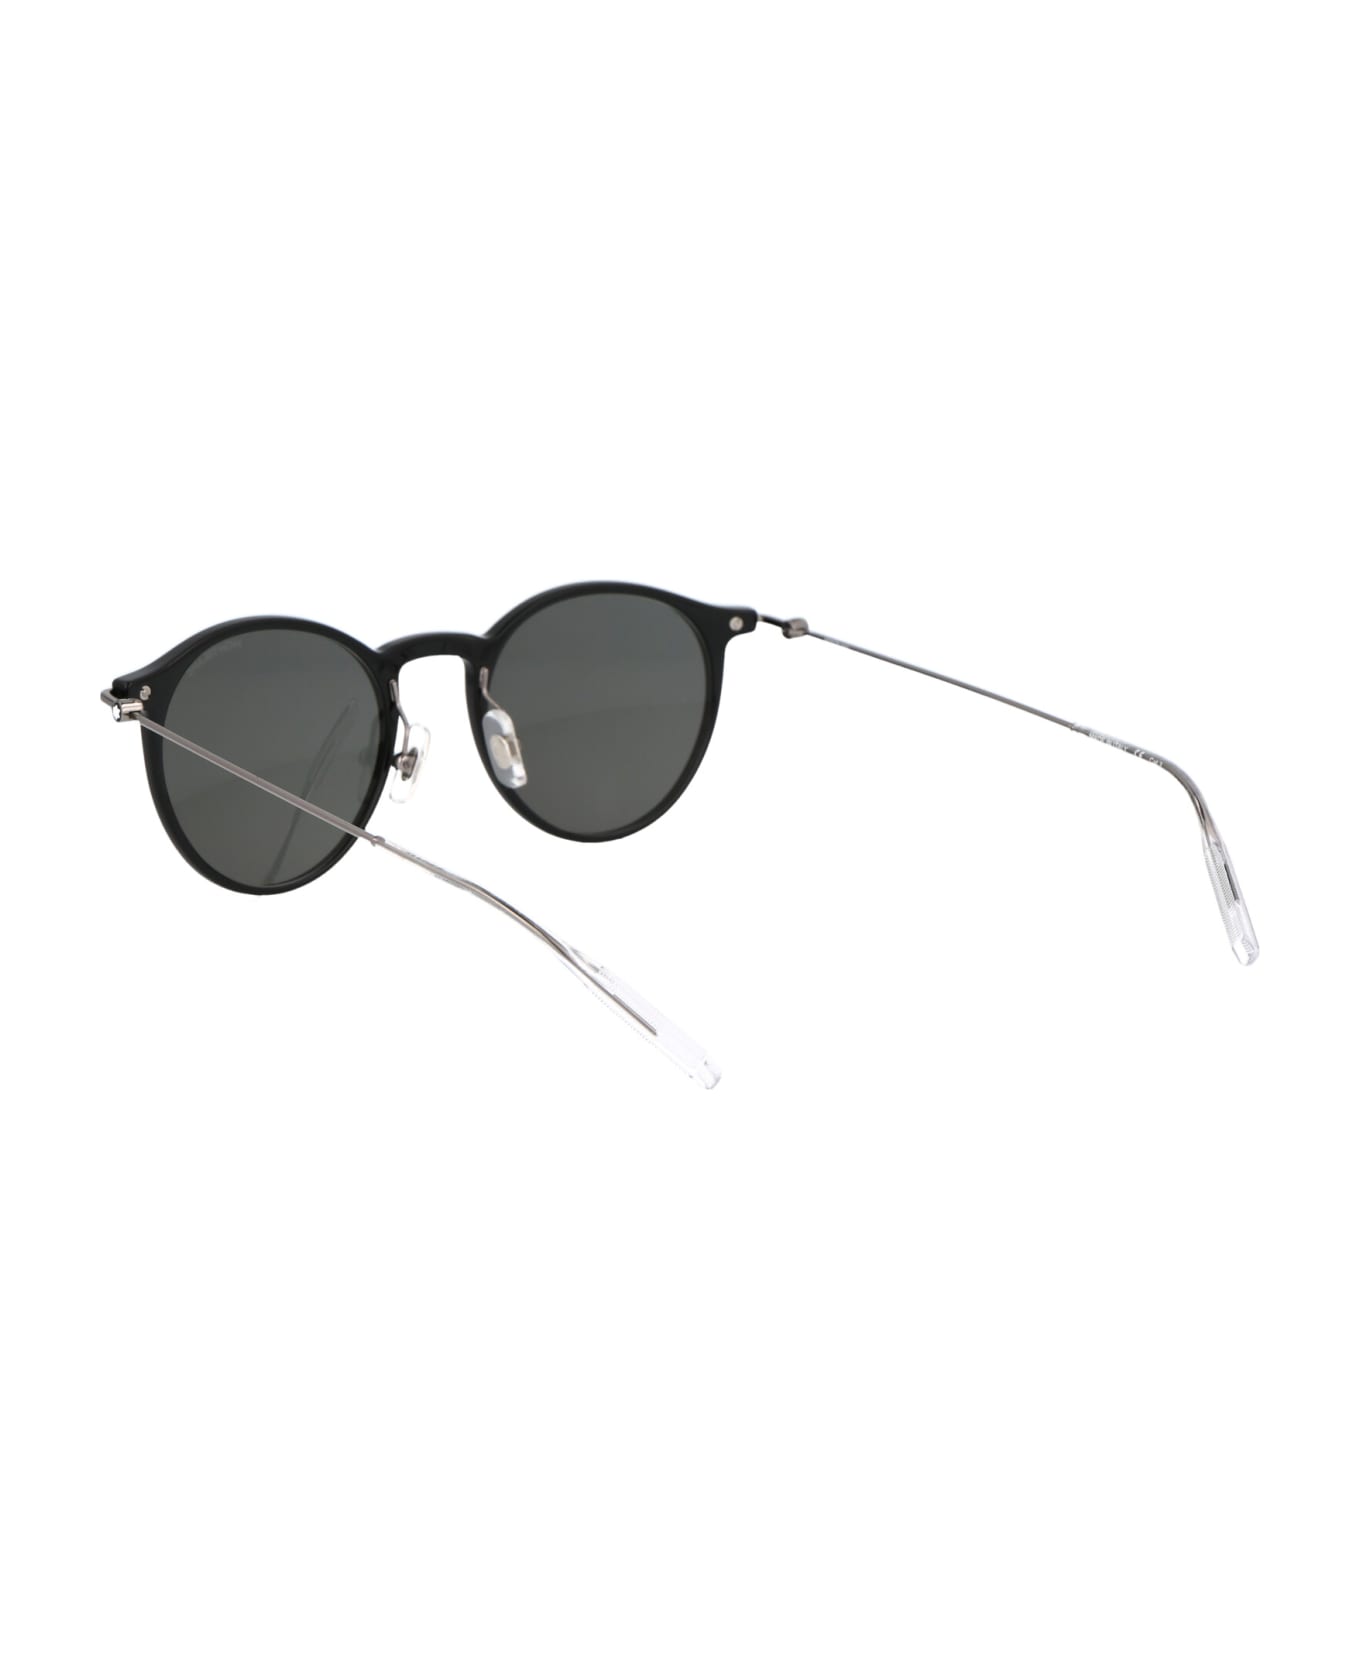 Montblanc Mb0097s Sunglasses - 005 BLACK RUTHENIUM GREY